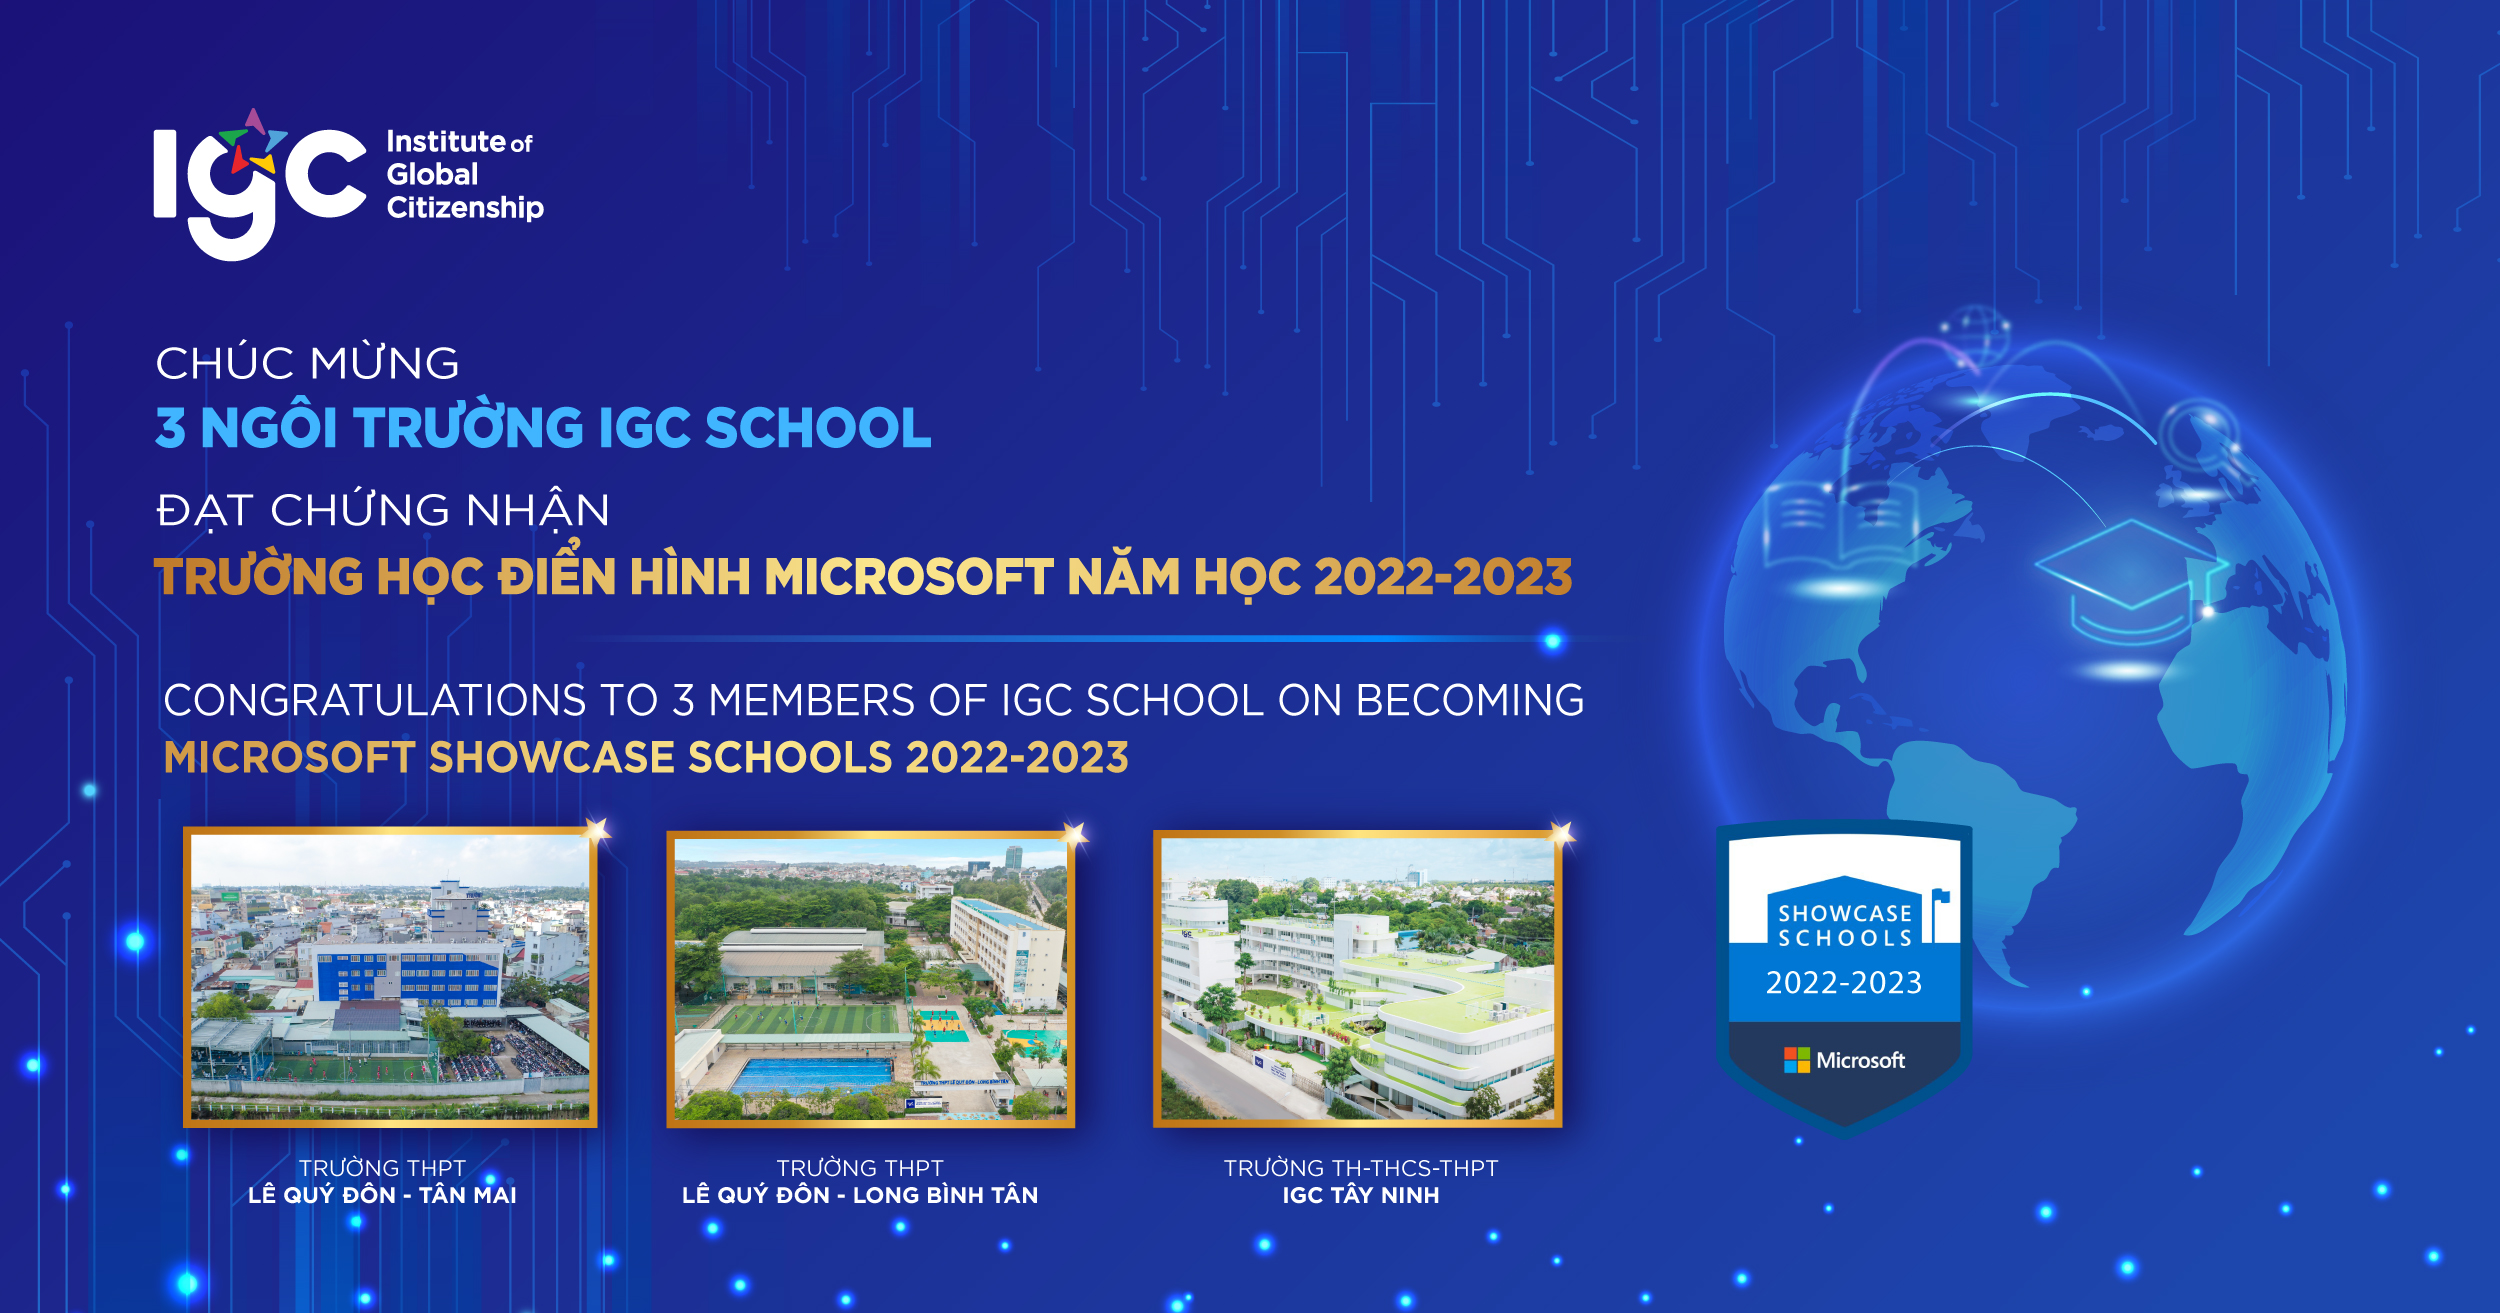 Trường học Điển hình Microsoft 2022-2023